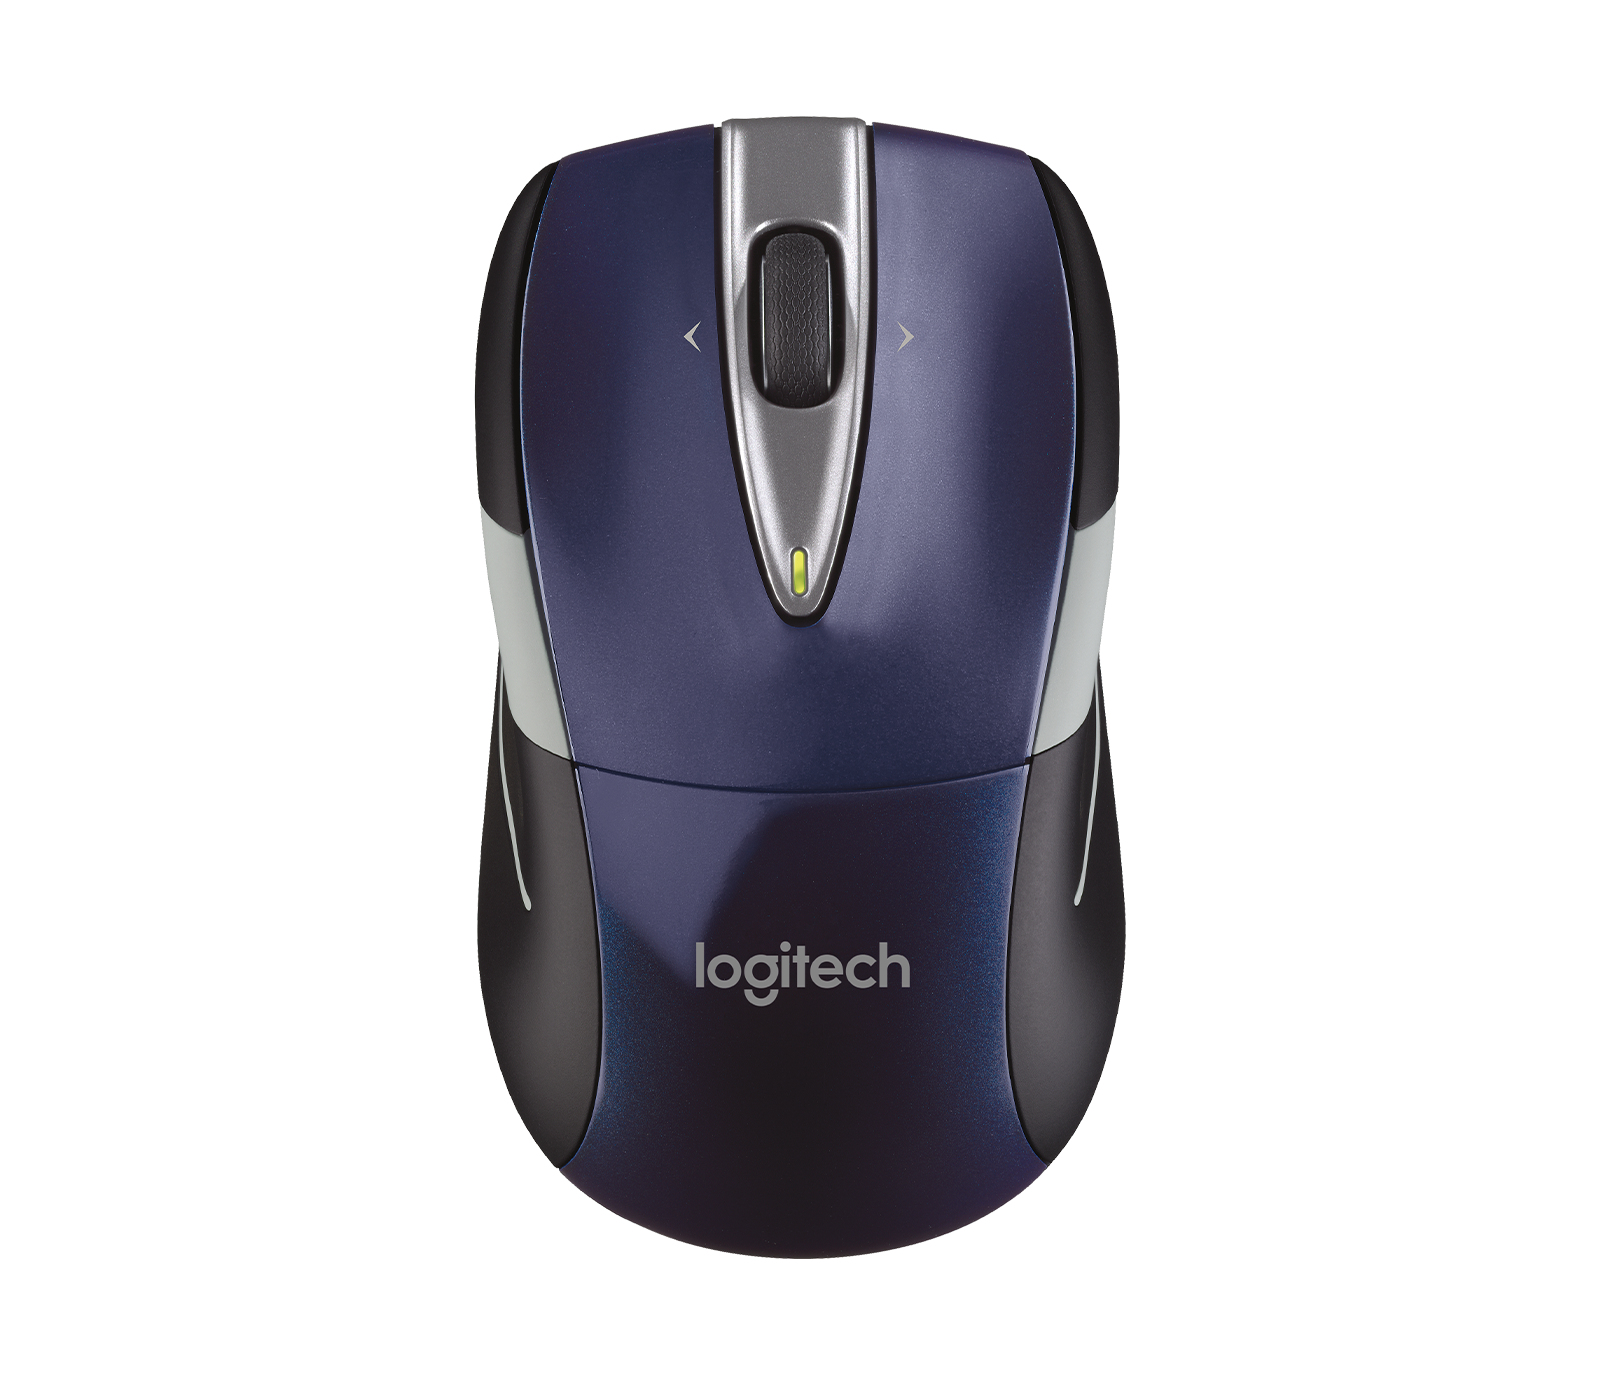 Logitech Wireless Mouse Model M525 